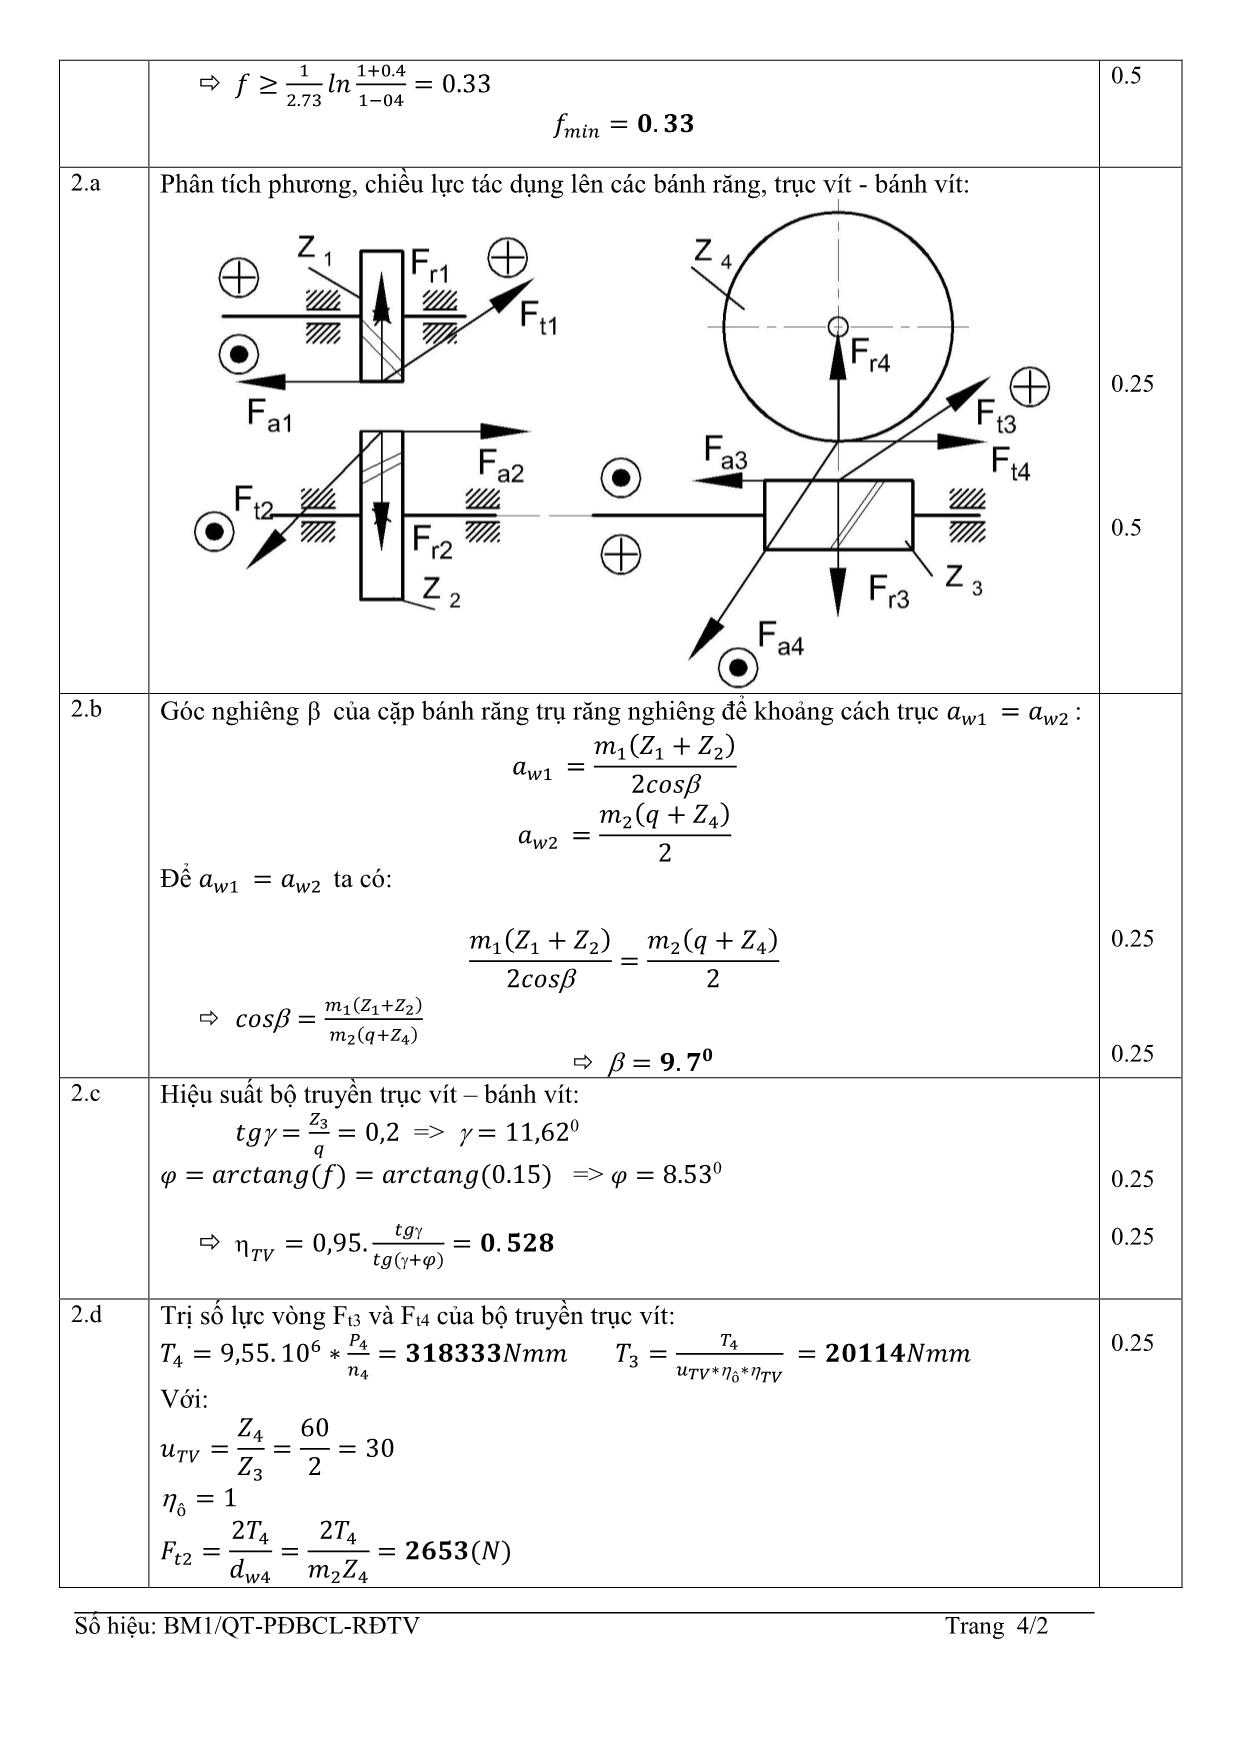 Đề thi Cuối học kỳ 3 môn Nguyên lý chi tiết máy - Năm học 2014-2015 trang 4